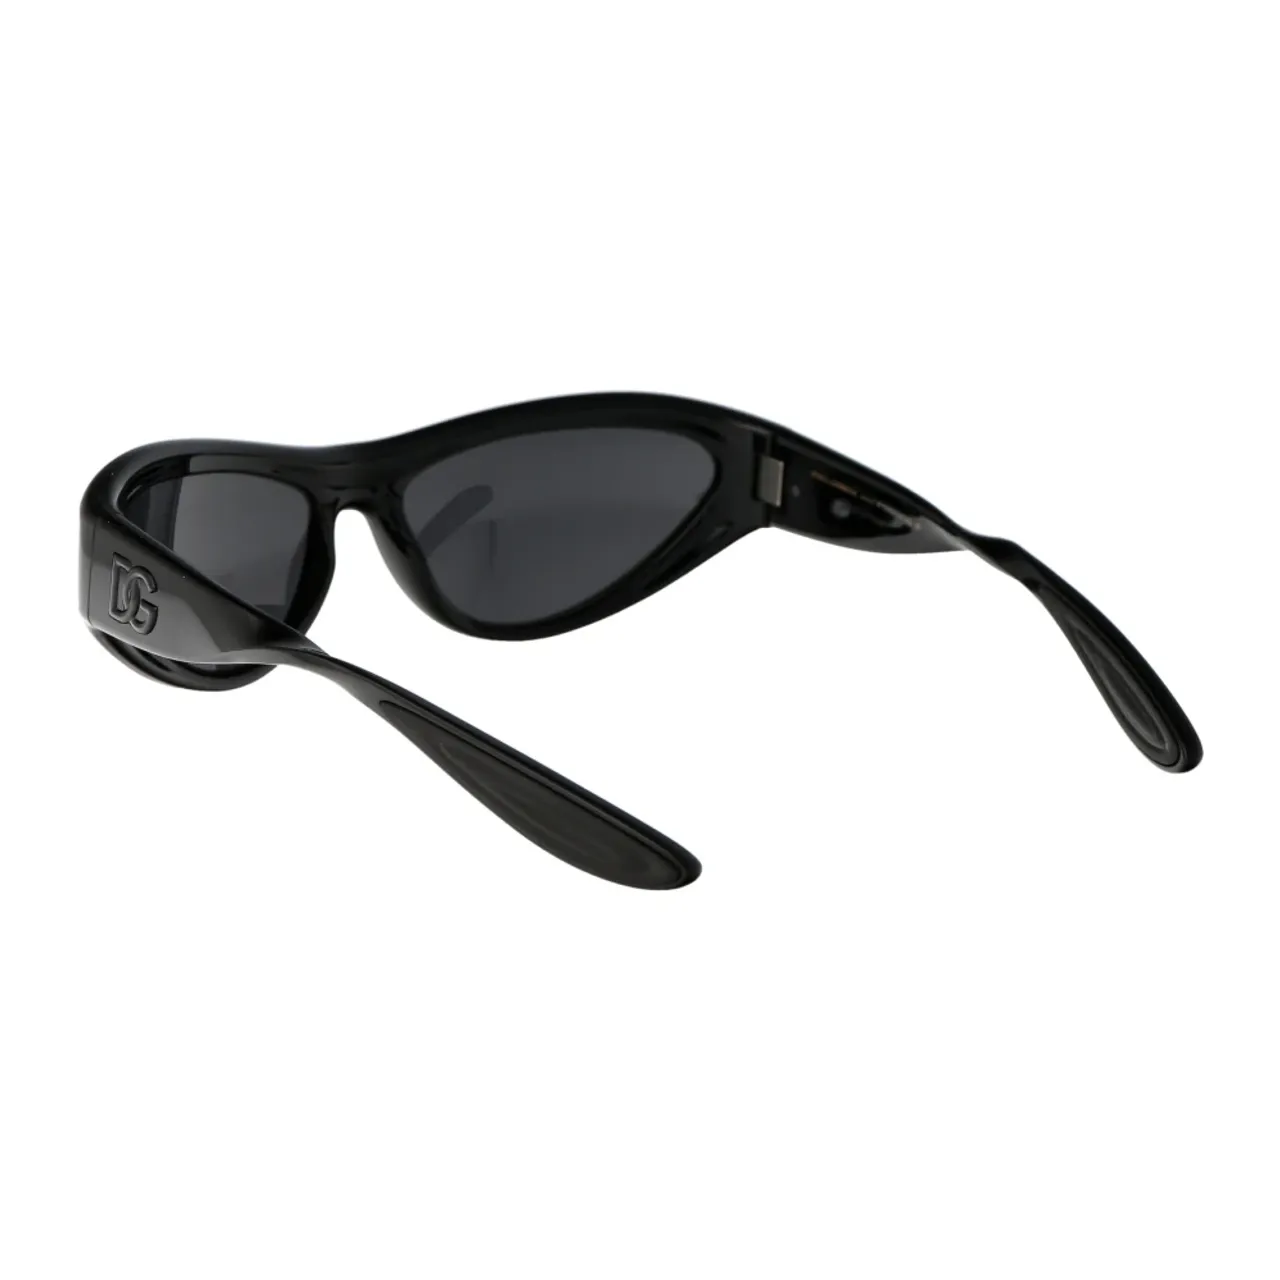 Stylische Sonnenbrille 0Dg6190 Dolce & Gabbana